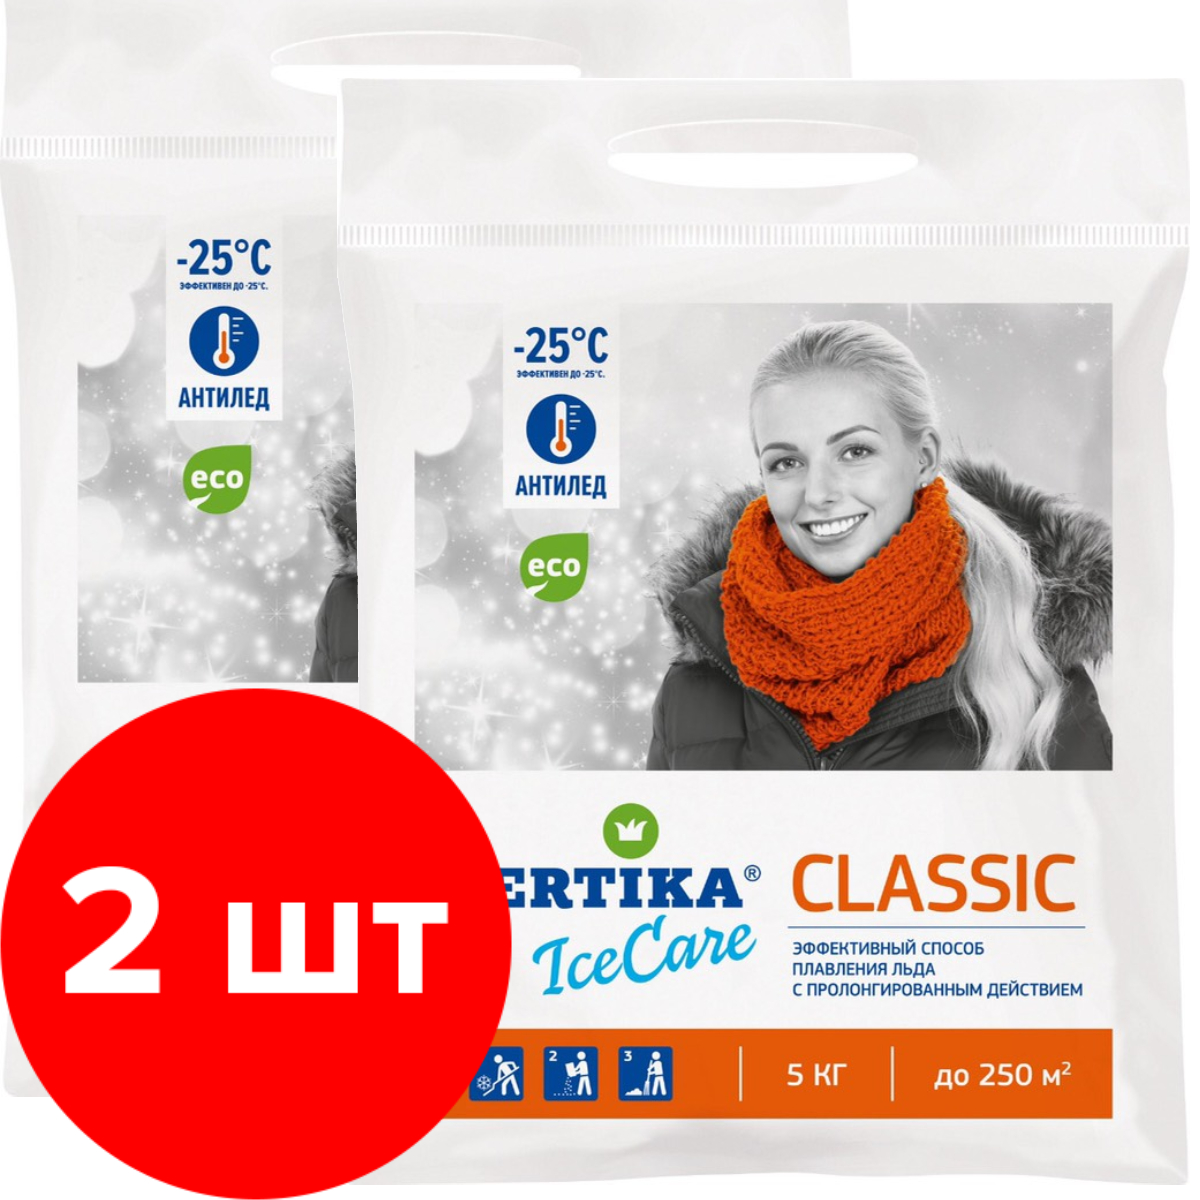 Антигололёдный реагент Fertika IceCare Сlassic 2 упаковки по 5 кг